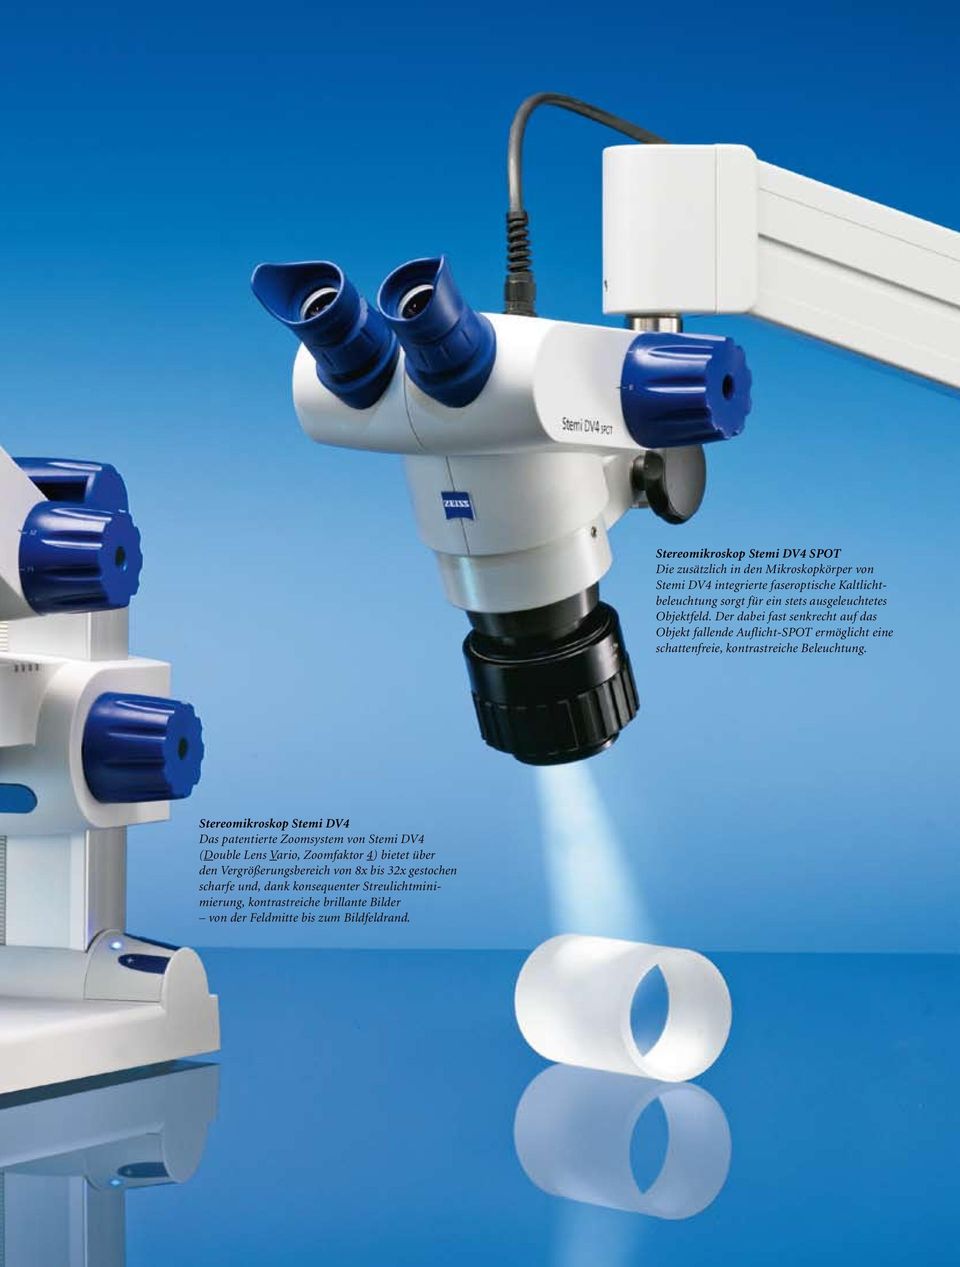 Stereomikroskop Stemi DV4 SPOT Die zusätzlich in den Mikroskopkörper von Stemi DV4 integrierte faseroptische Kaltlichtbeleuchtung sorgt für ein